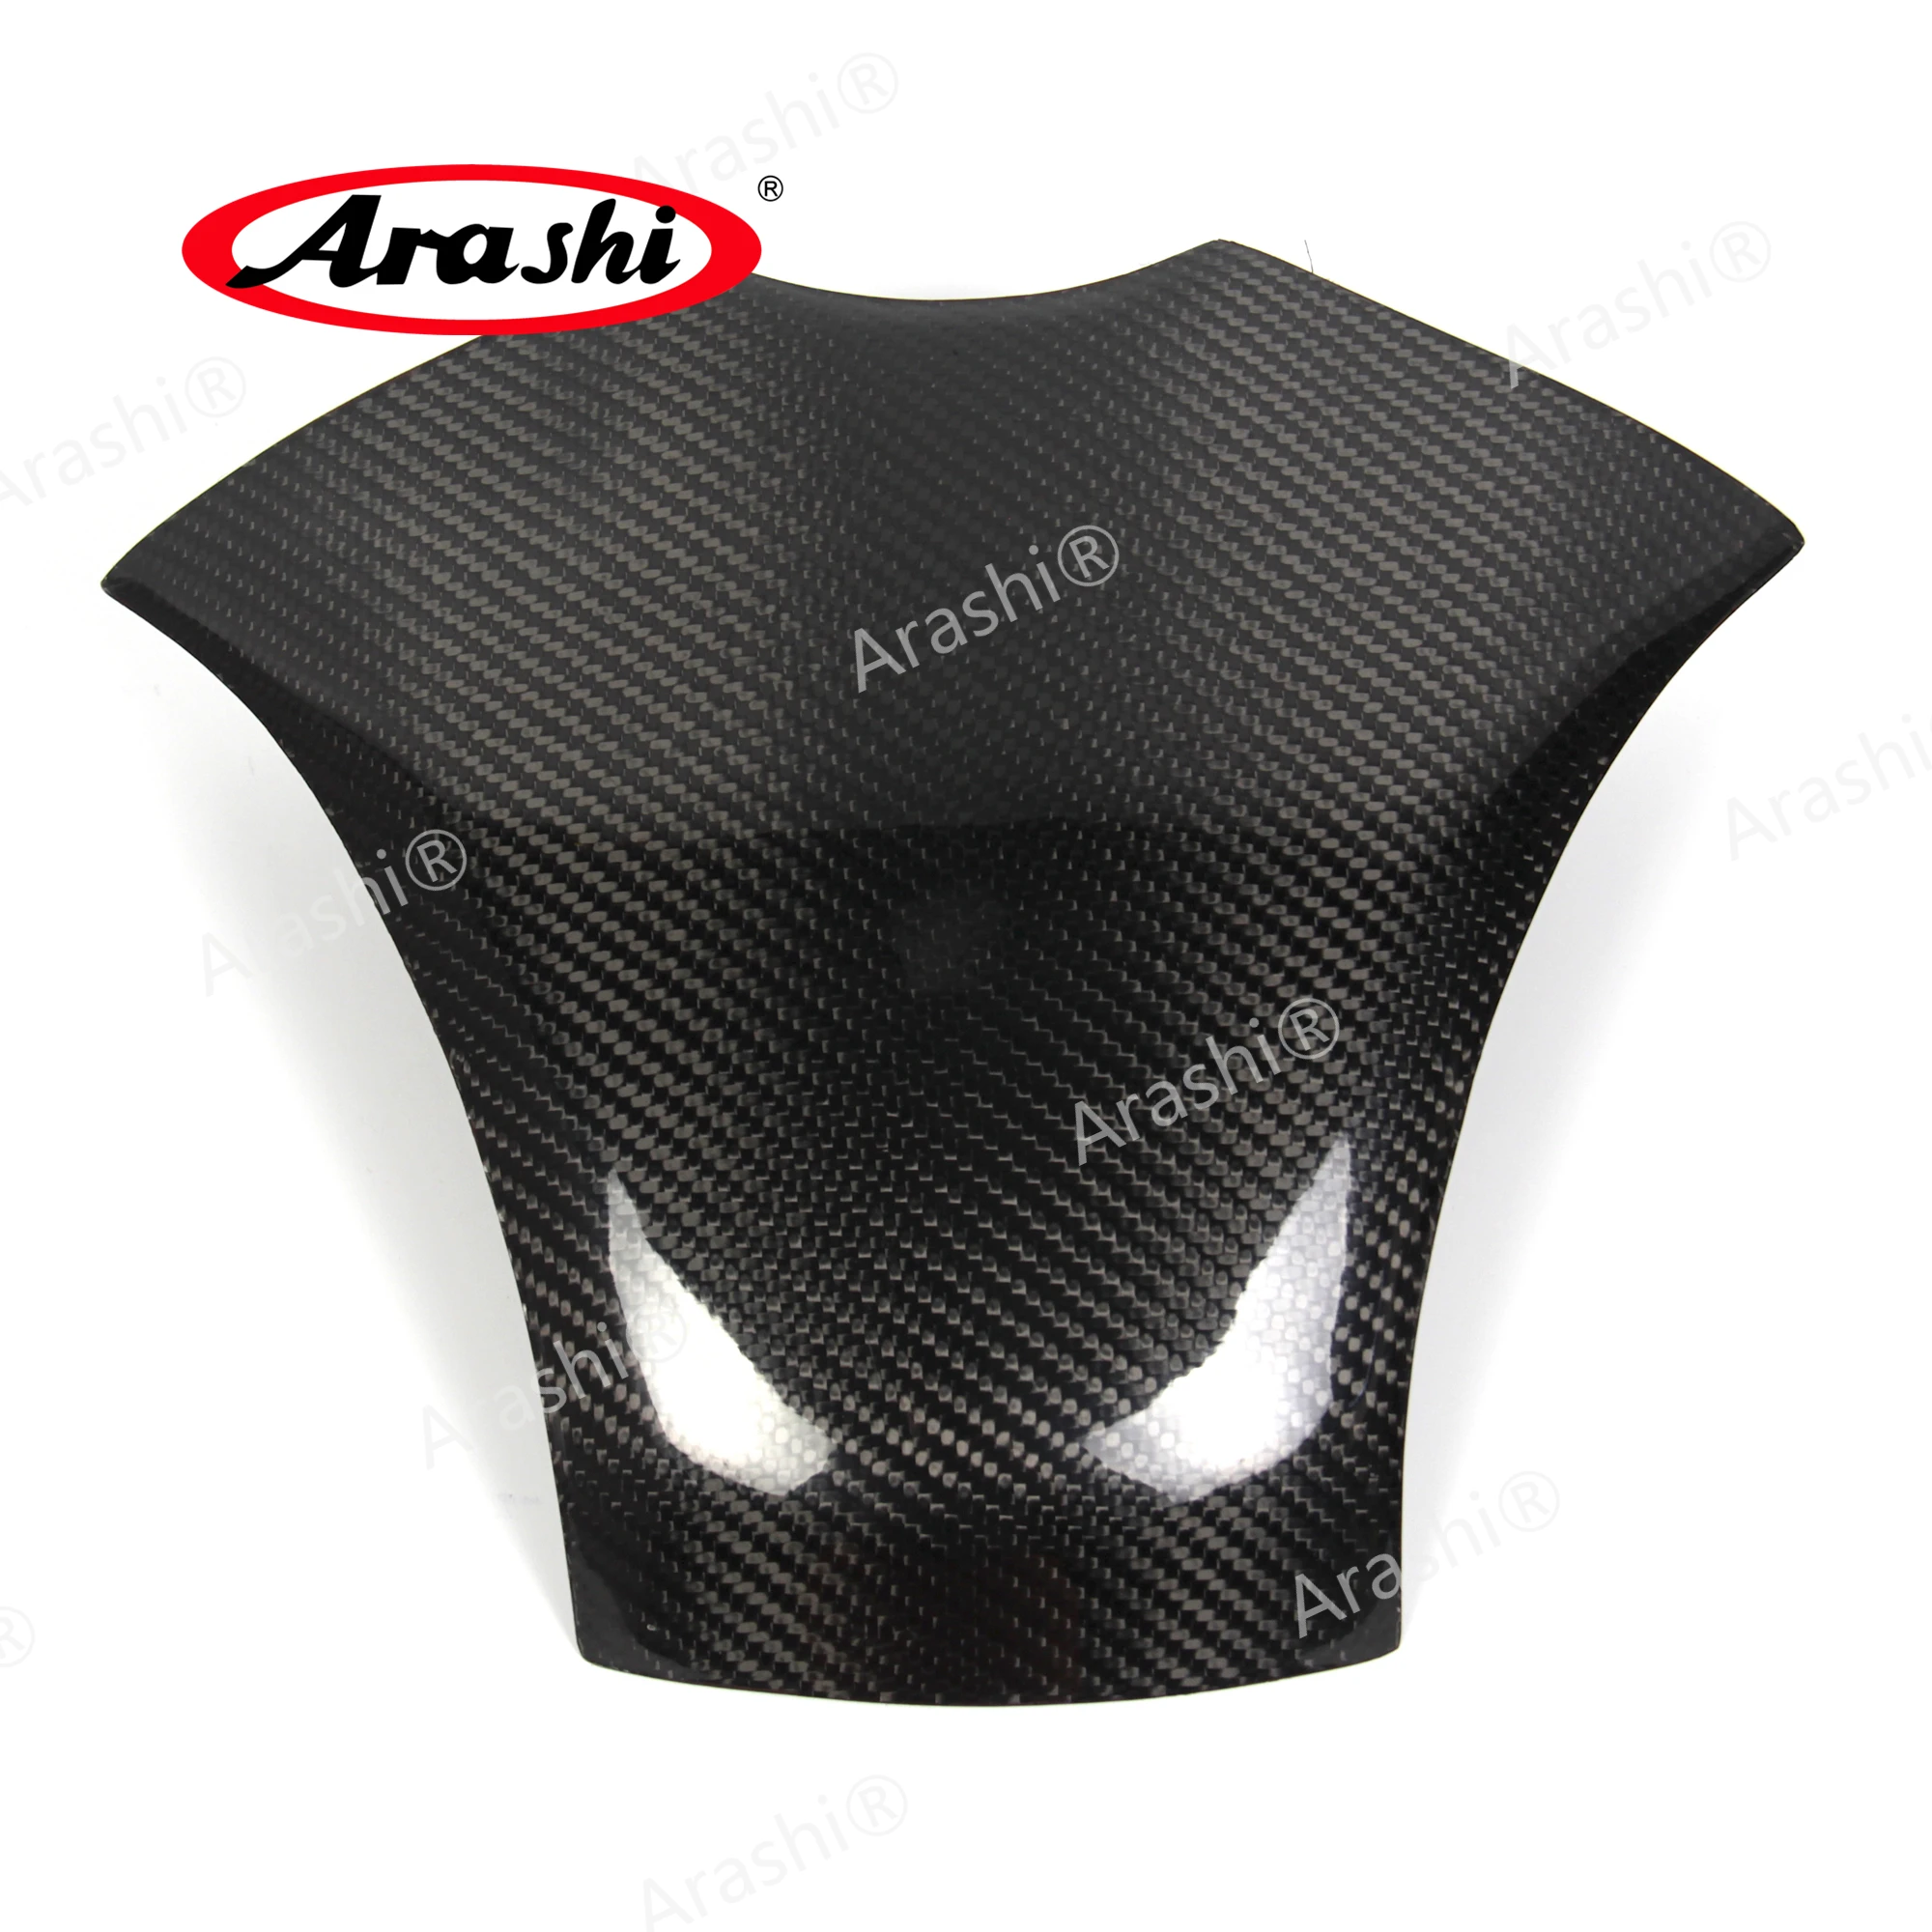 

Arashi CBR600RR Carbon Fiber Gas Fuel Tank Cover For HONDA CBR 600 RR CBR600 600RR 2007 2008 2009 2010 2011 2012 Fairing Shell